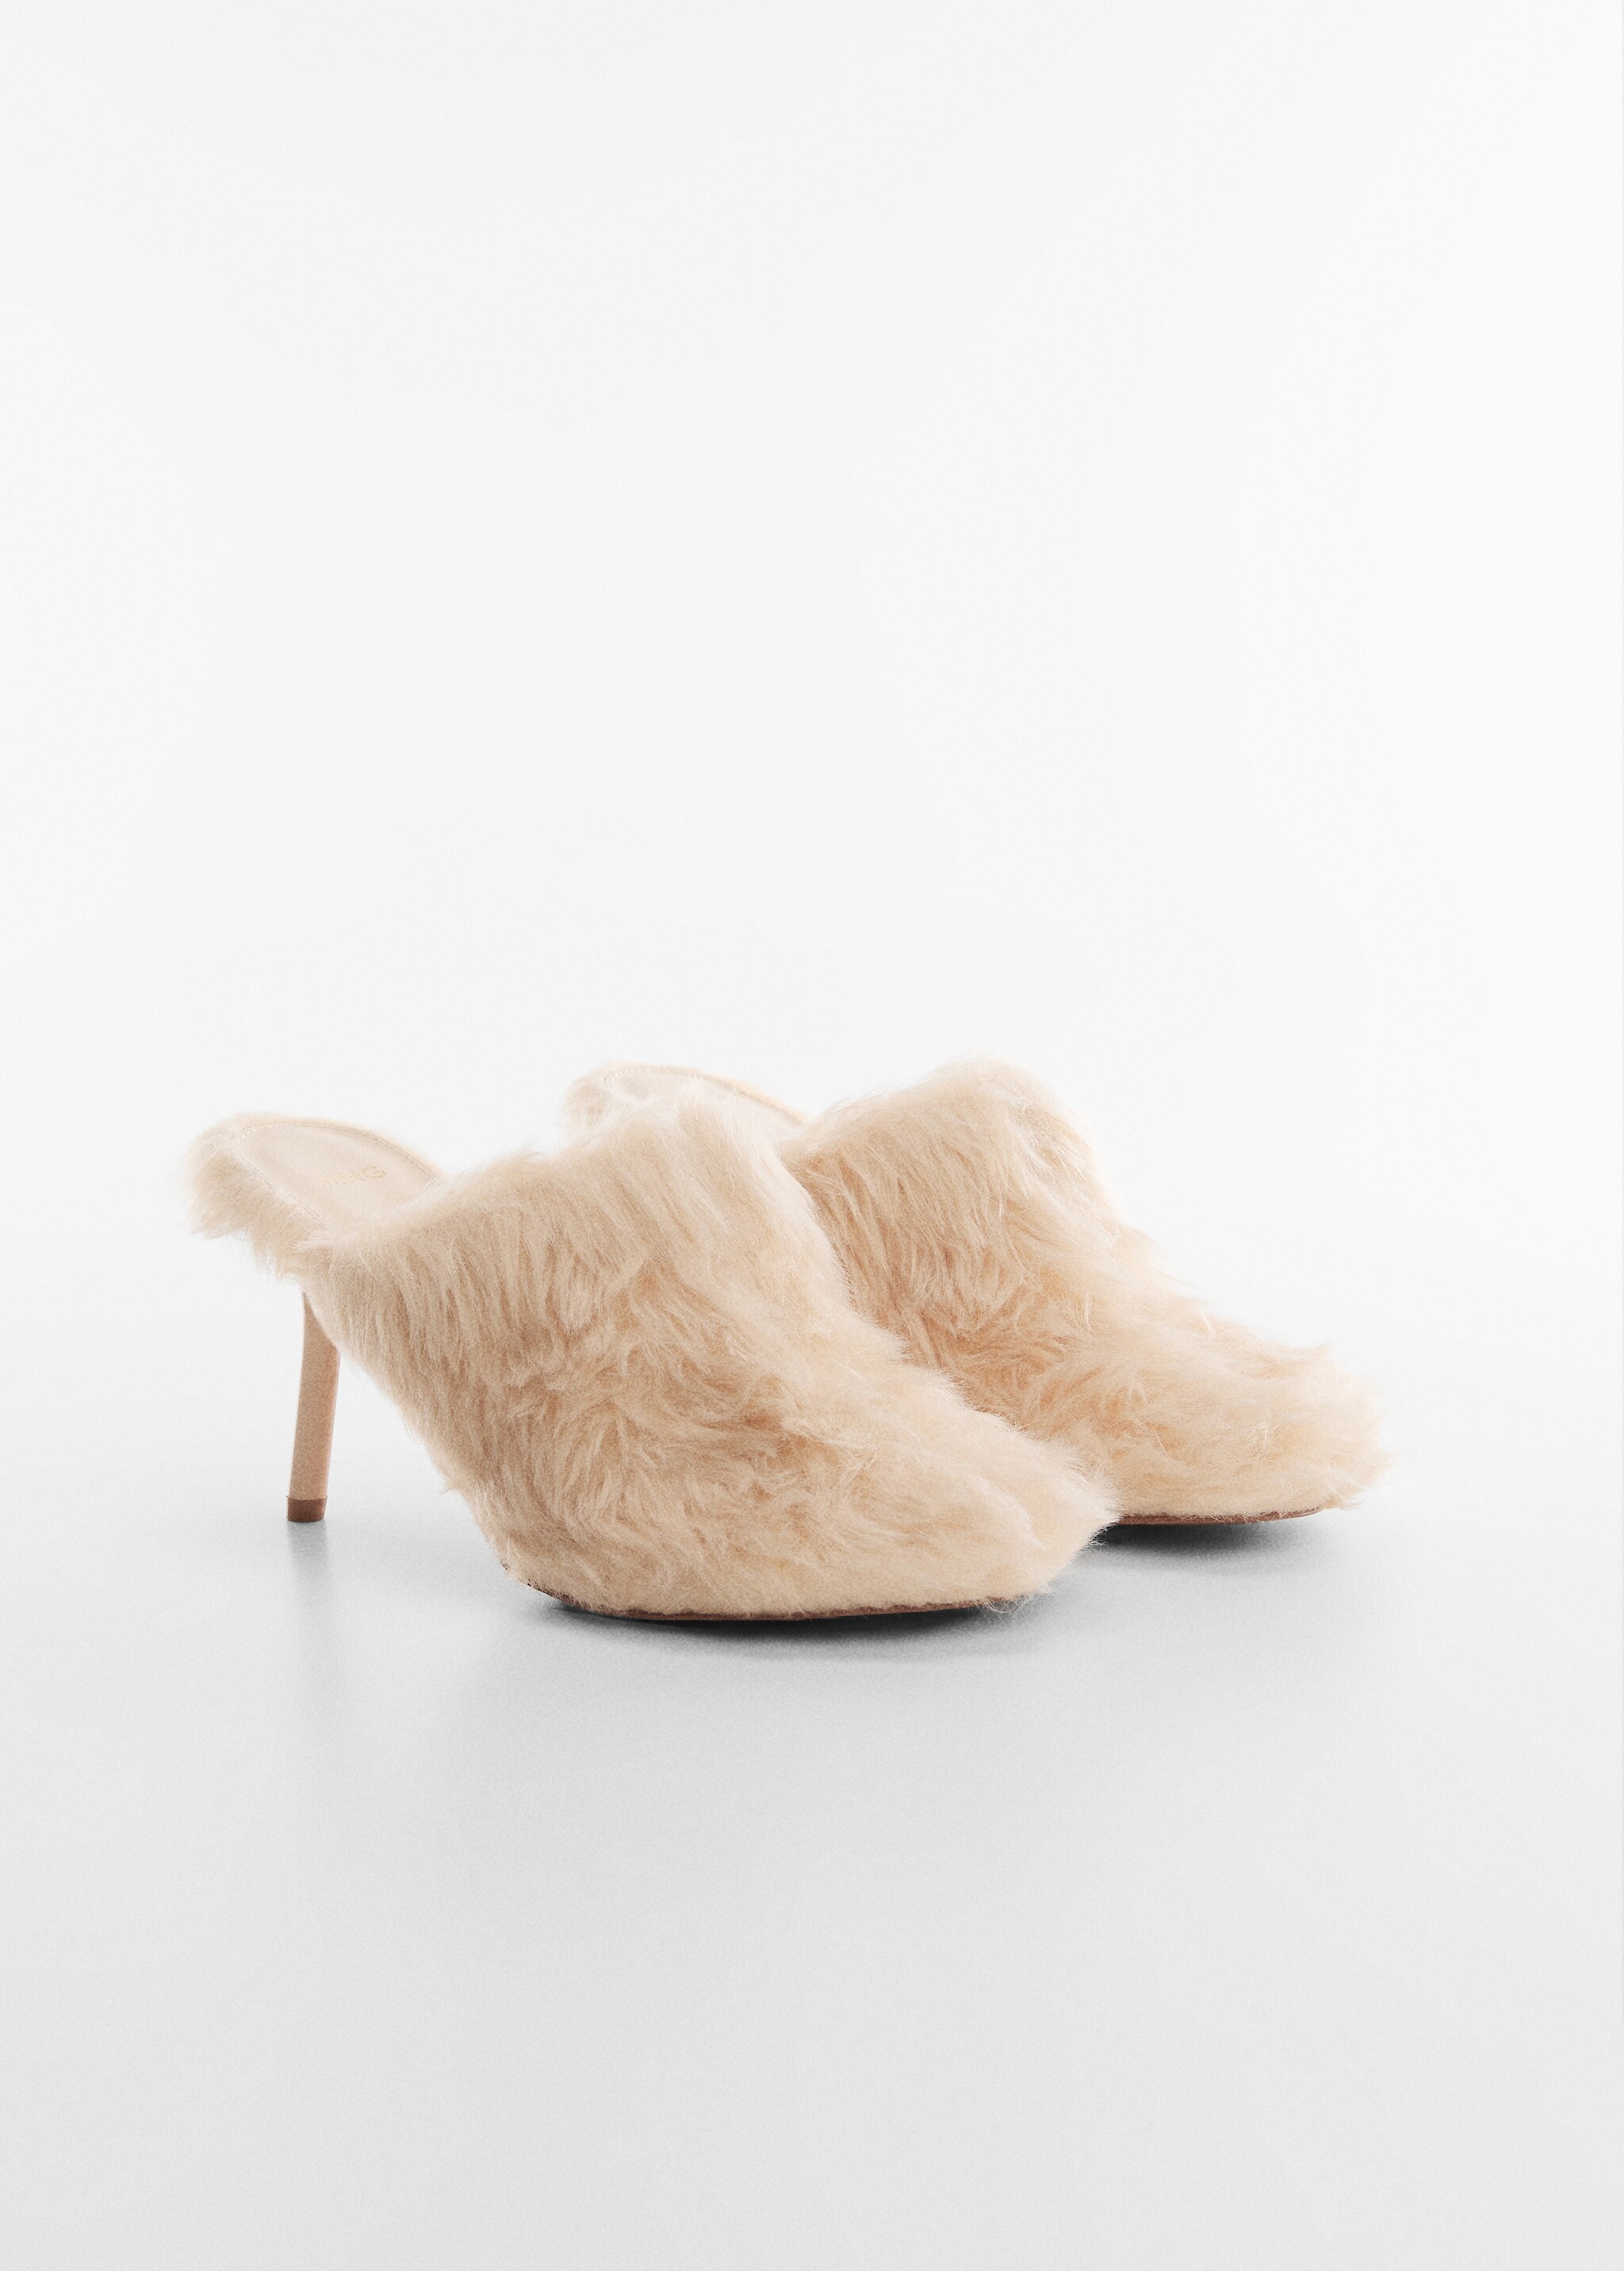 Fur heel shoes - Medium plane